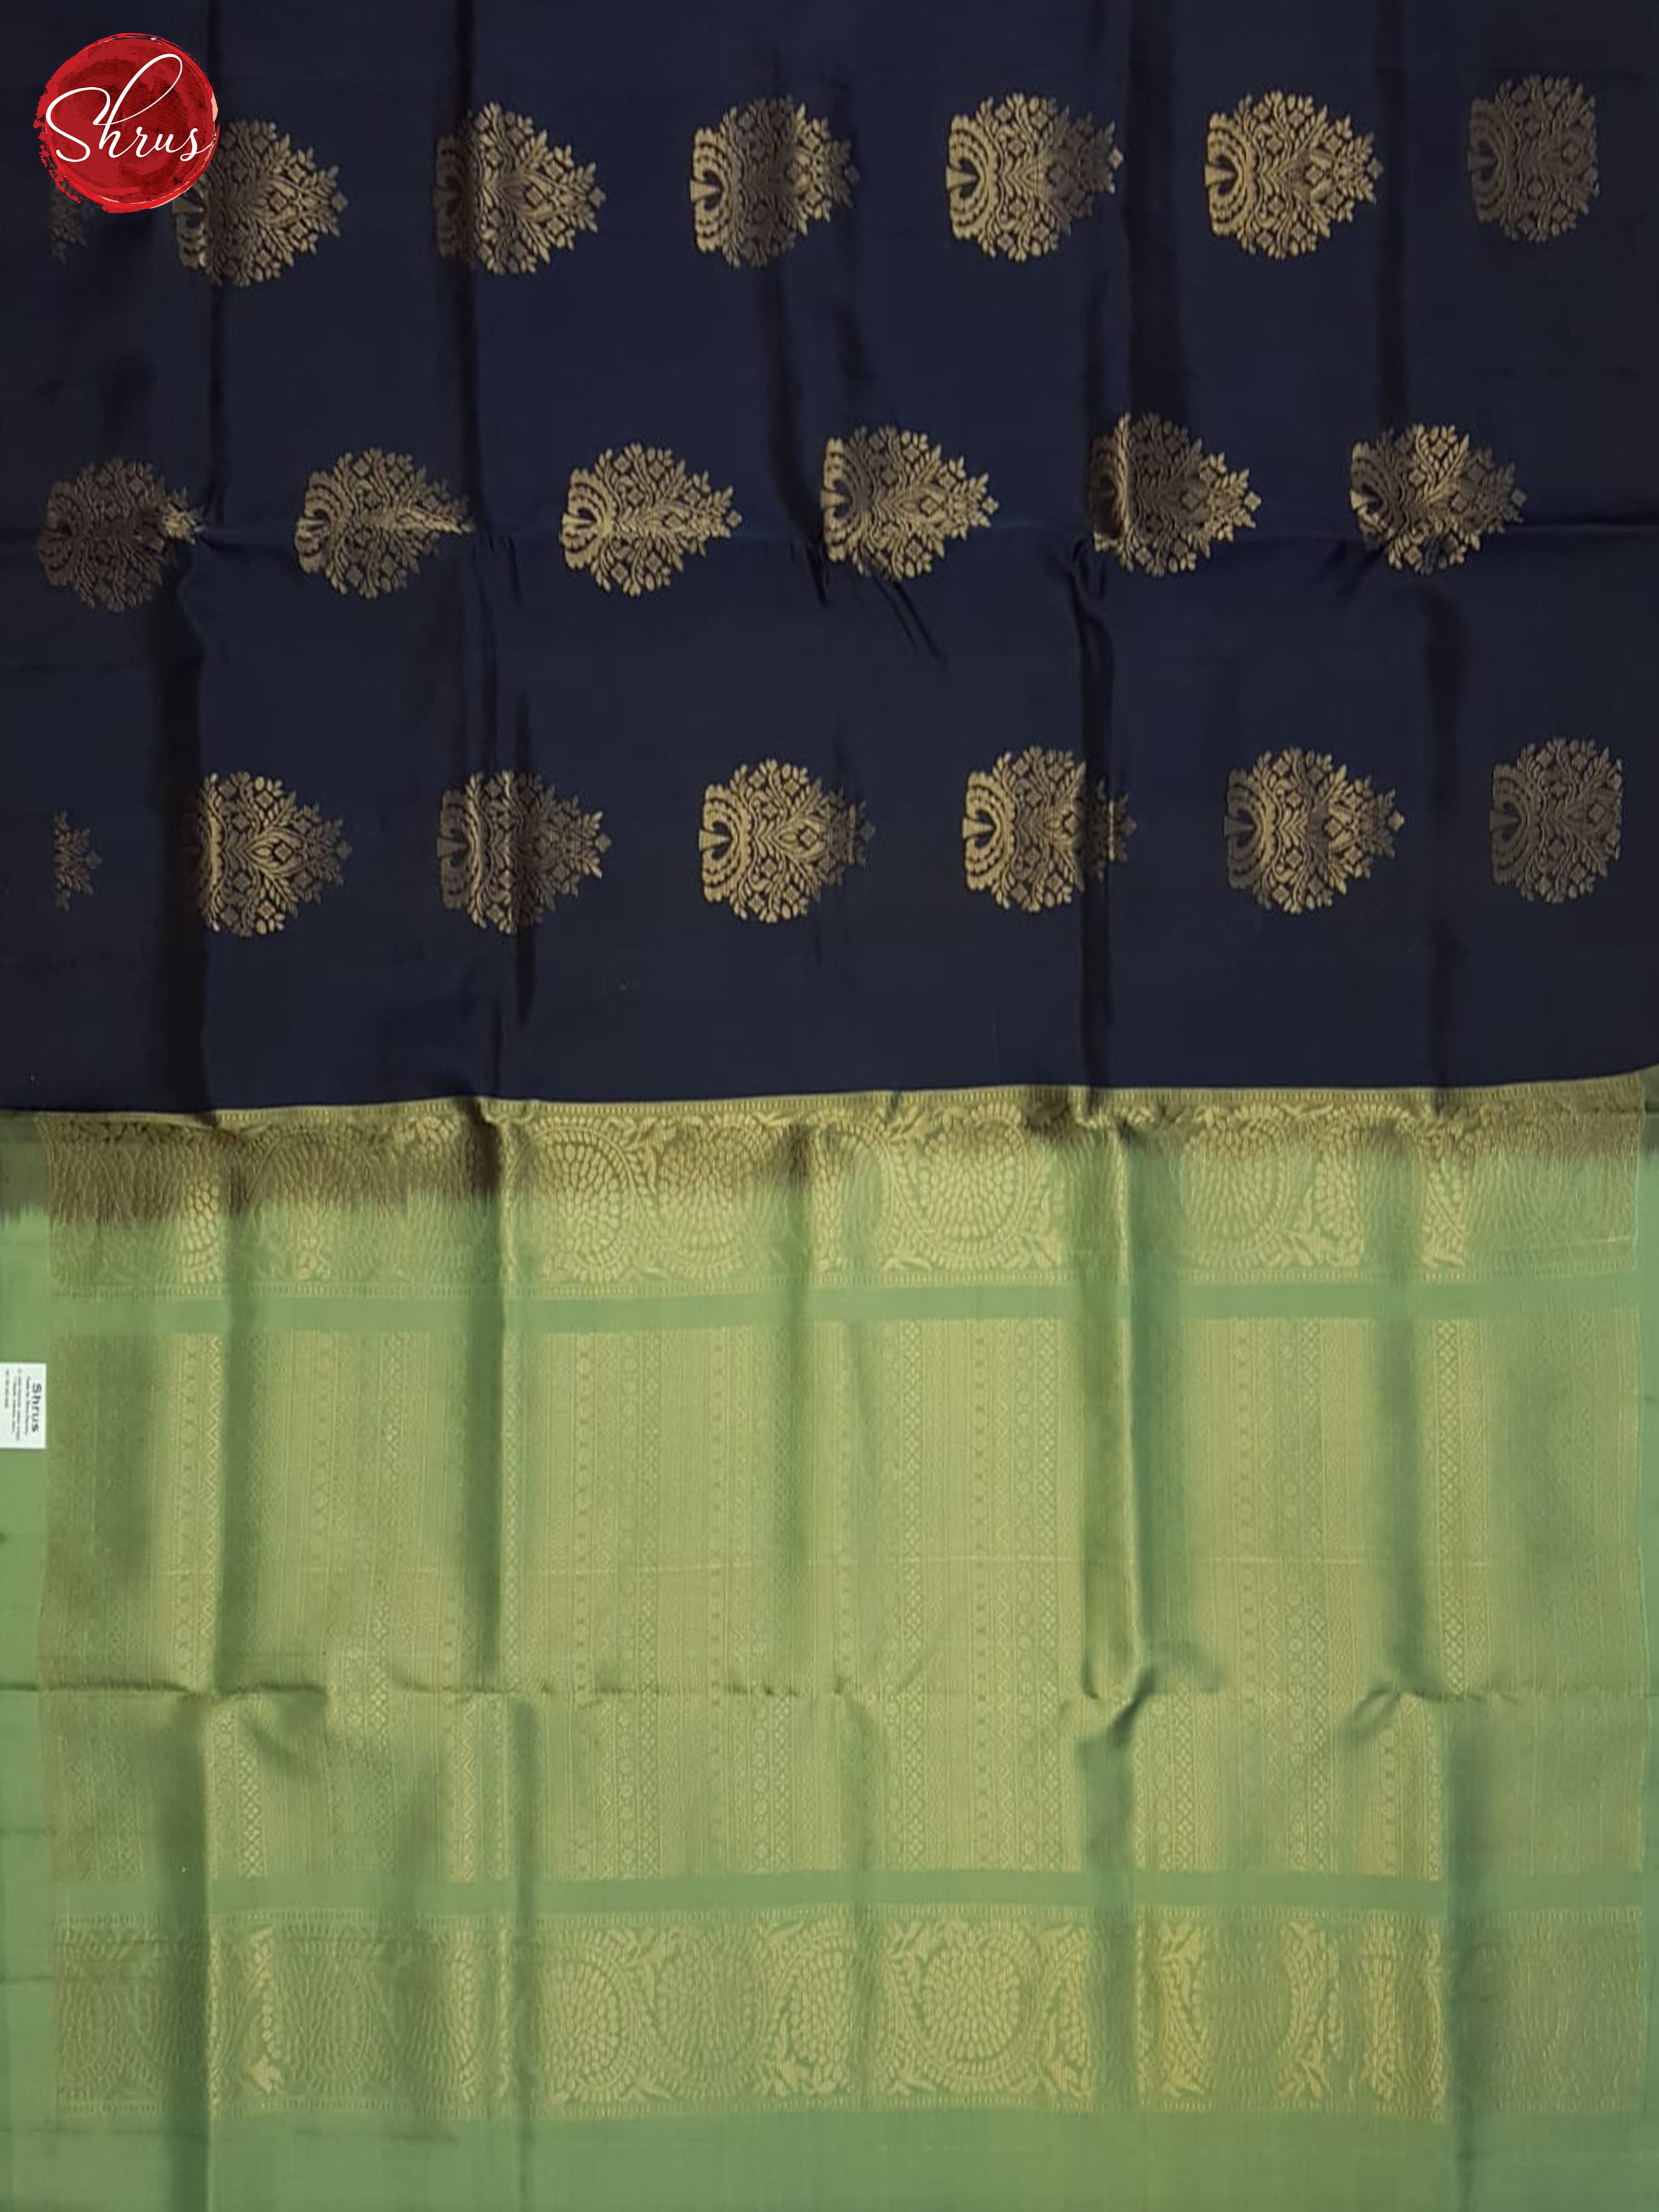 Blue And Elachi Green - Soft Silk Half-pure Silk Saree - Shop on ShrusEternity.com